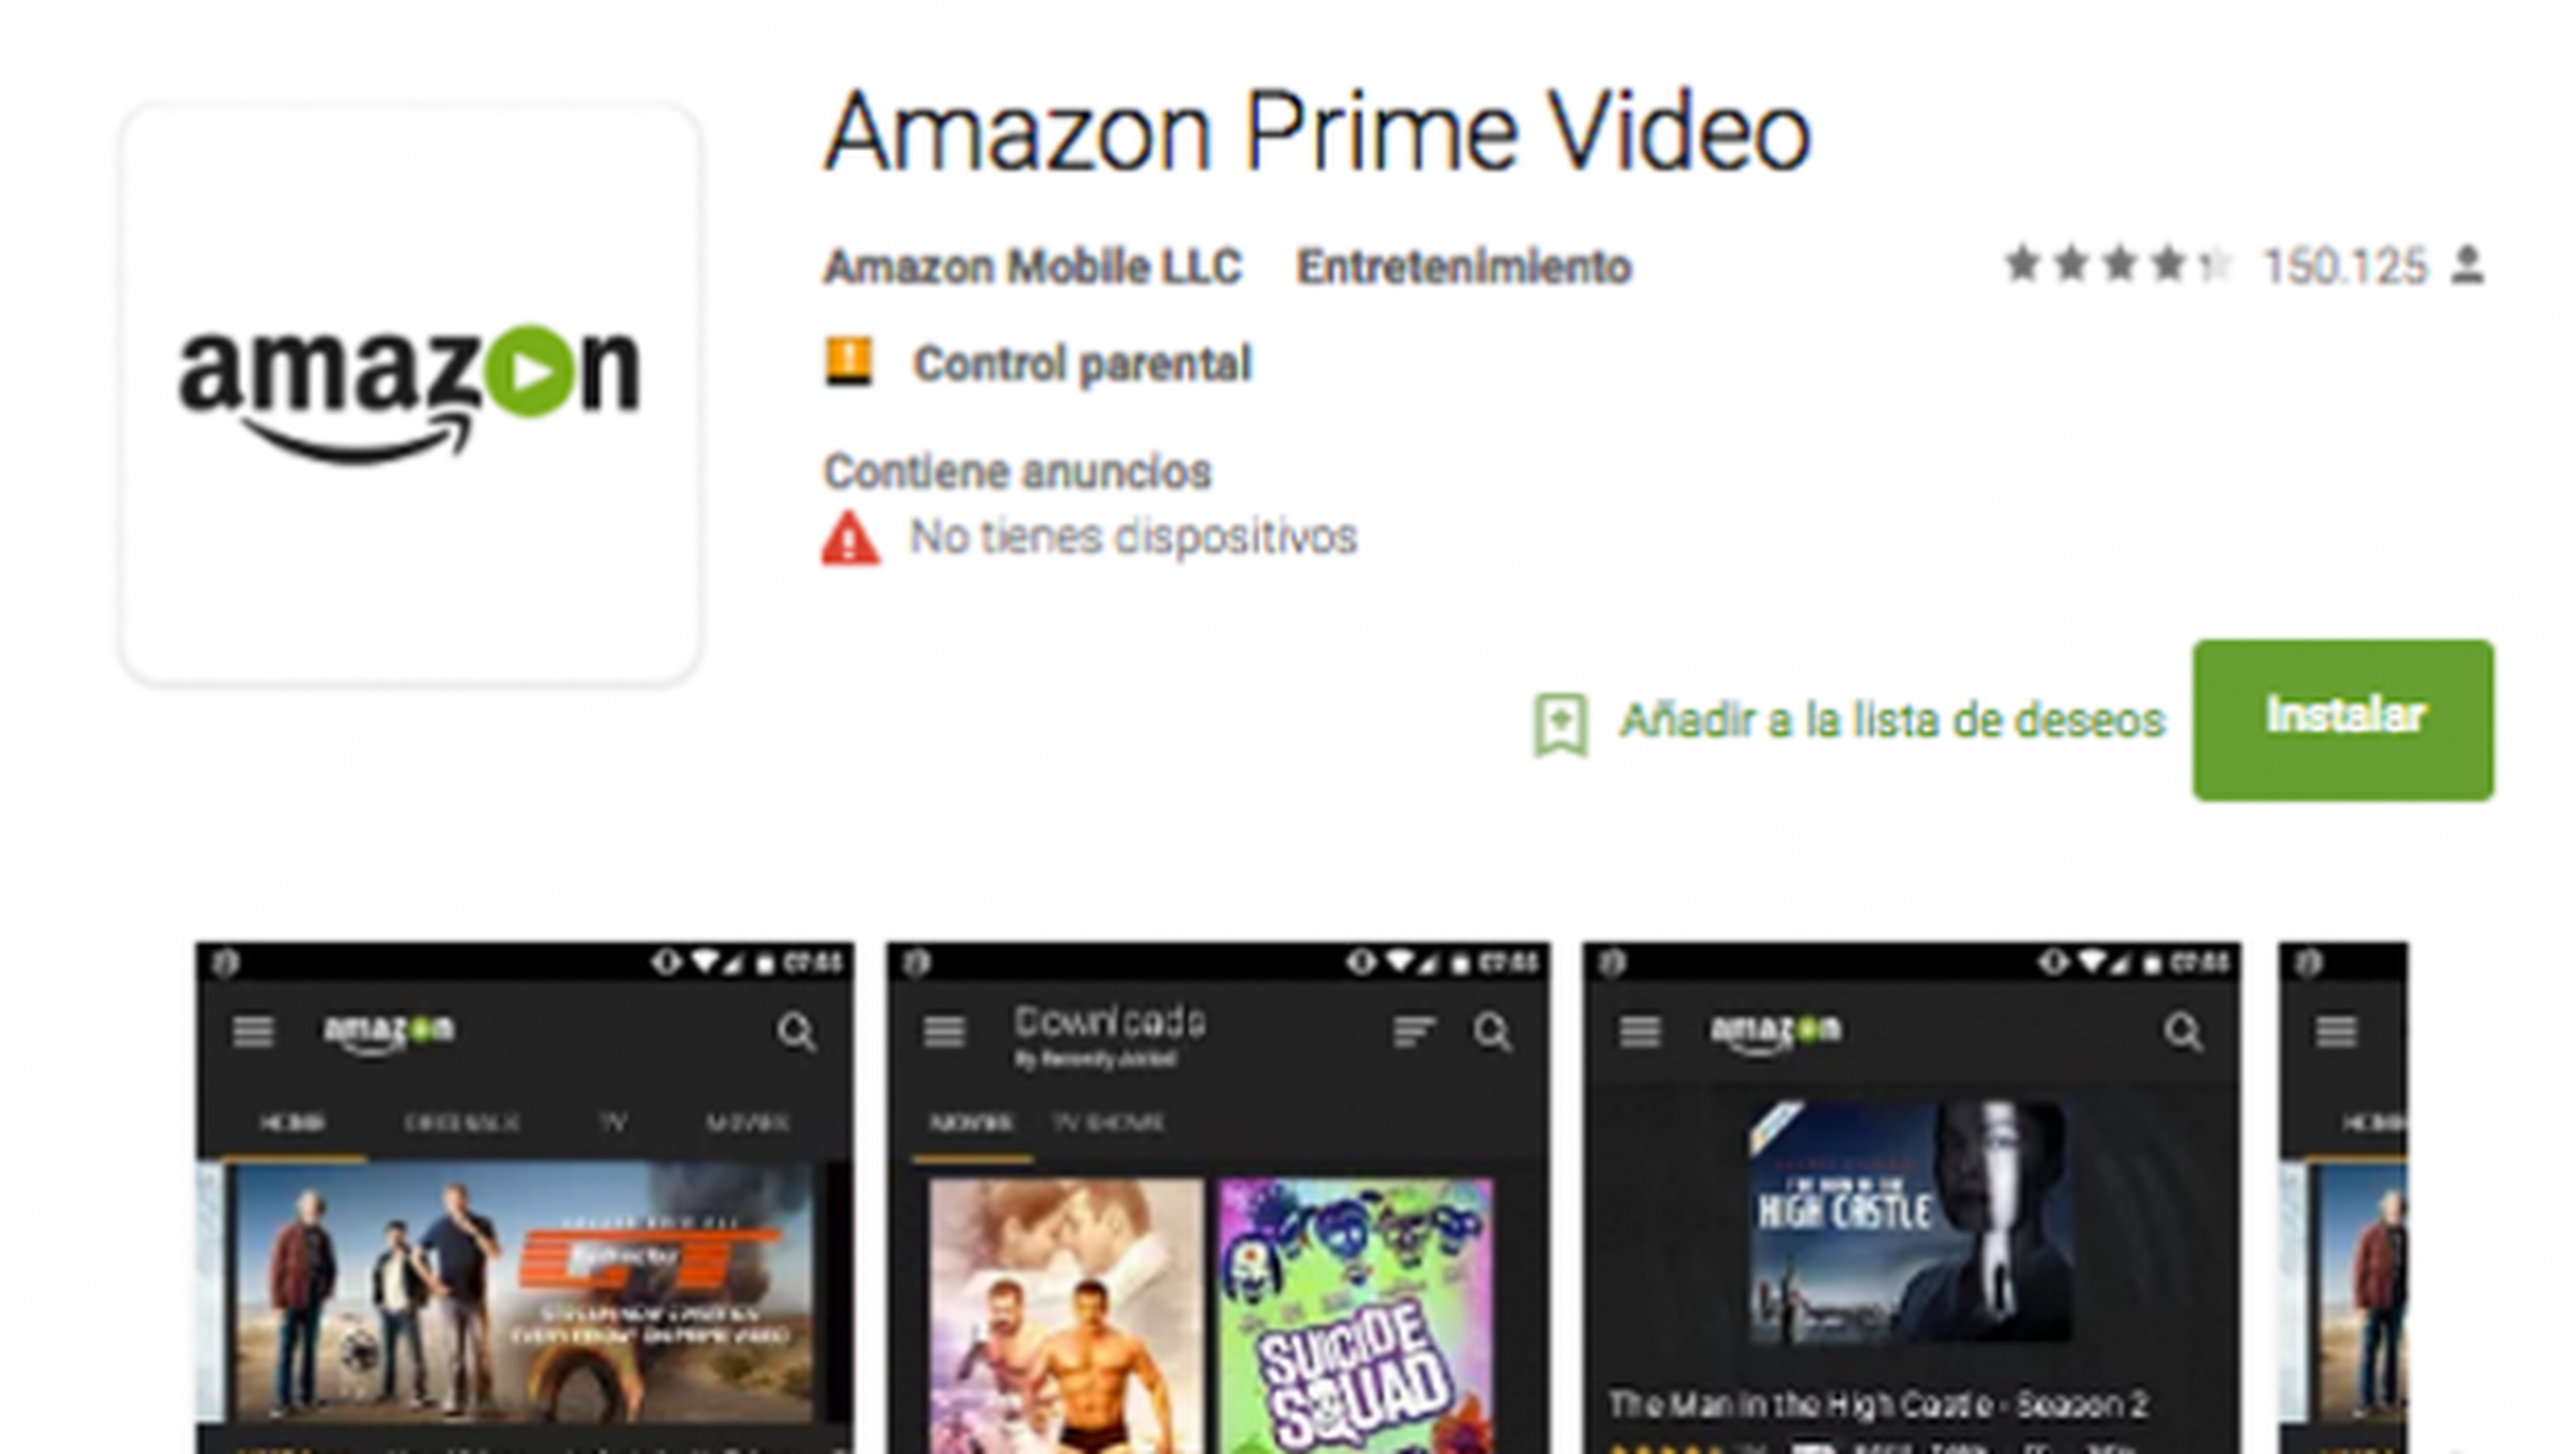 La app de Amazon Prime Video llega a móviles Android (por fin)